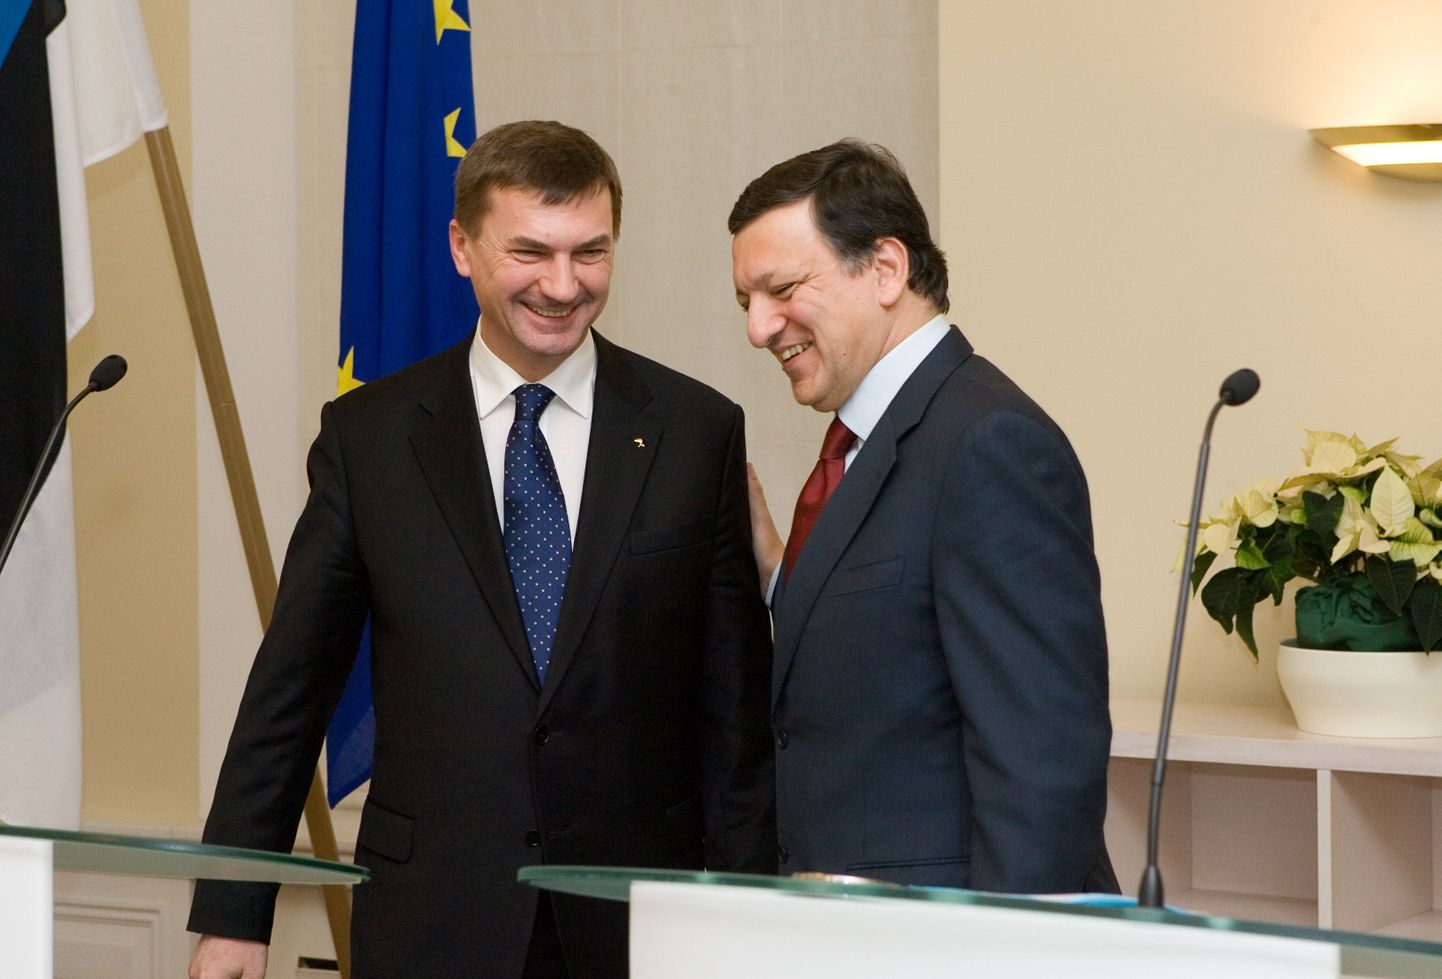 Euroopa Komisjoni president José Manuel Barroso ja Eesti peaminister Andrus Ansip kohtumisel Stenbocki majas.